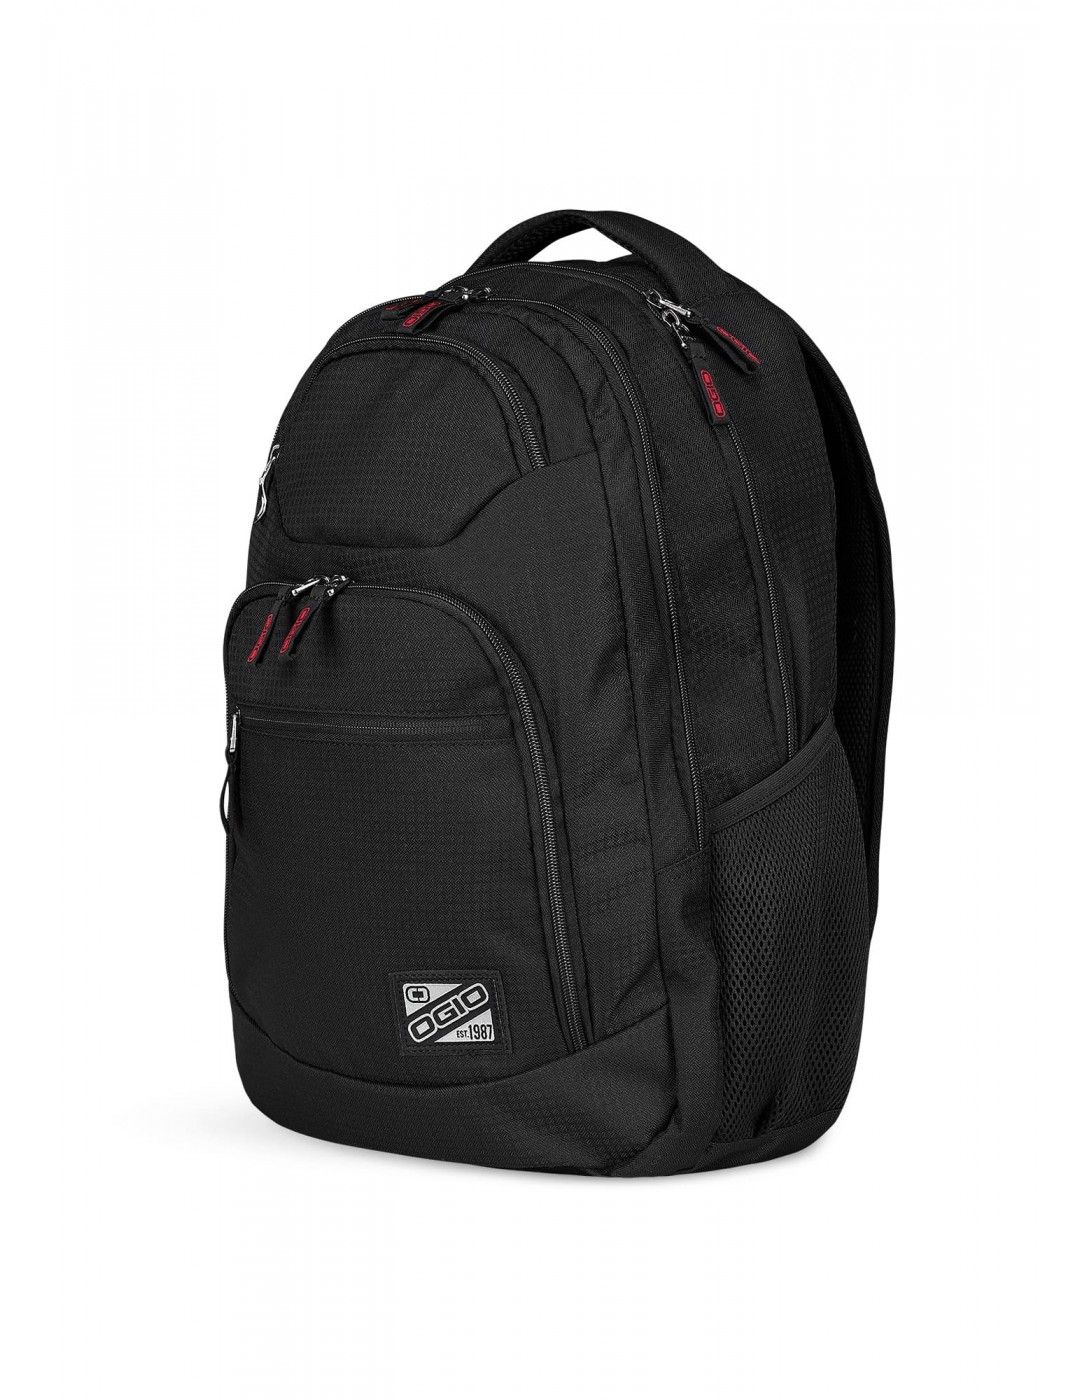 Laptop backpack OGIO Tribune 17 inches